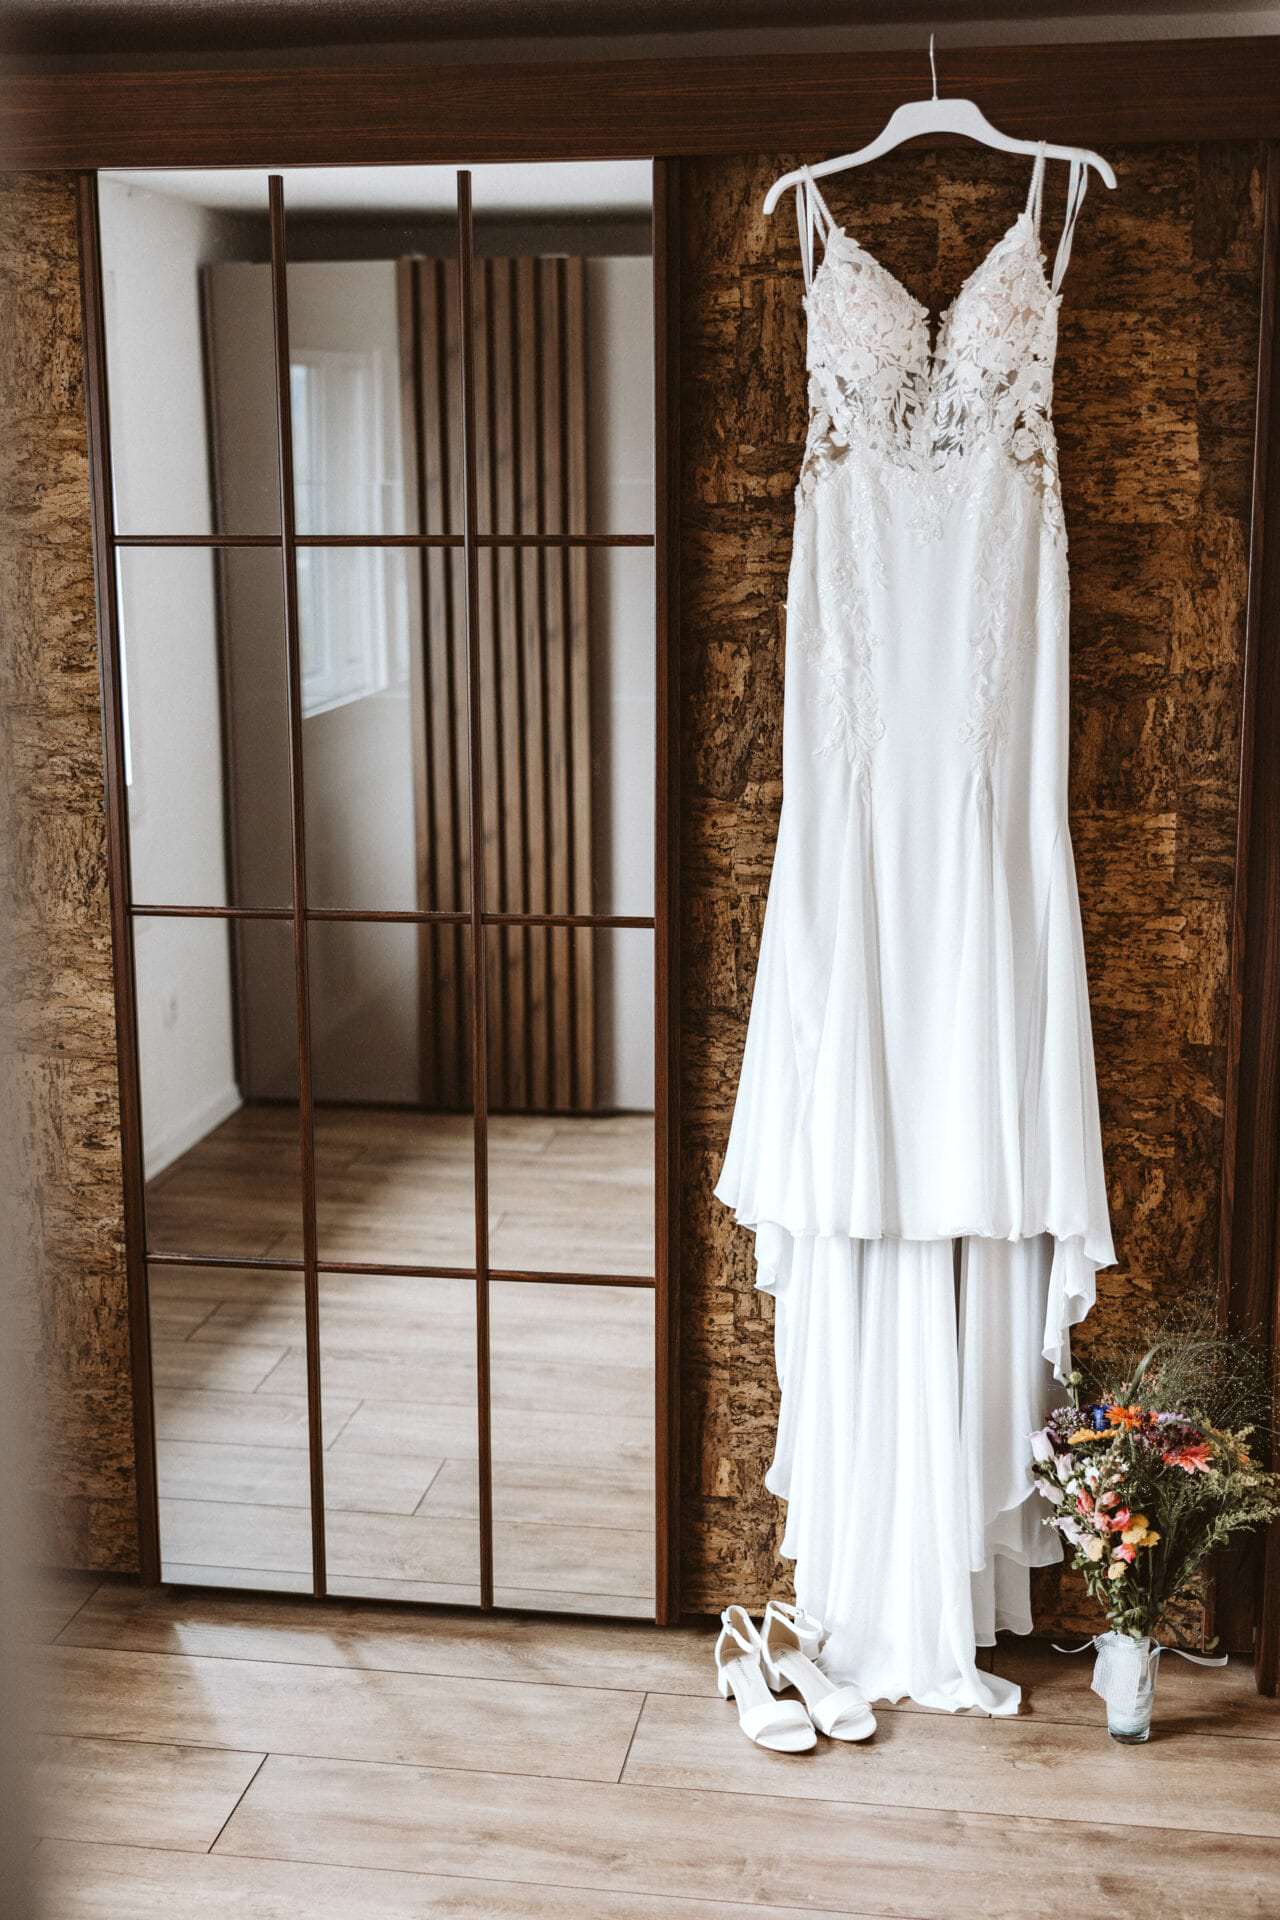 Hochzeitsfotograf Castrop Rauxel Hochzeit Heiraten Hochzeitsfotos - Hochzeitskleid hängt auf einem weißen Kleiderbügel neben einem Spiegel. Unter dem Hochzeitskleid ist ein Blumenstrauß und Schuhe zu sehen